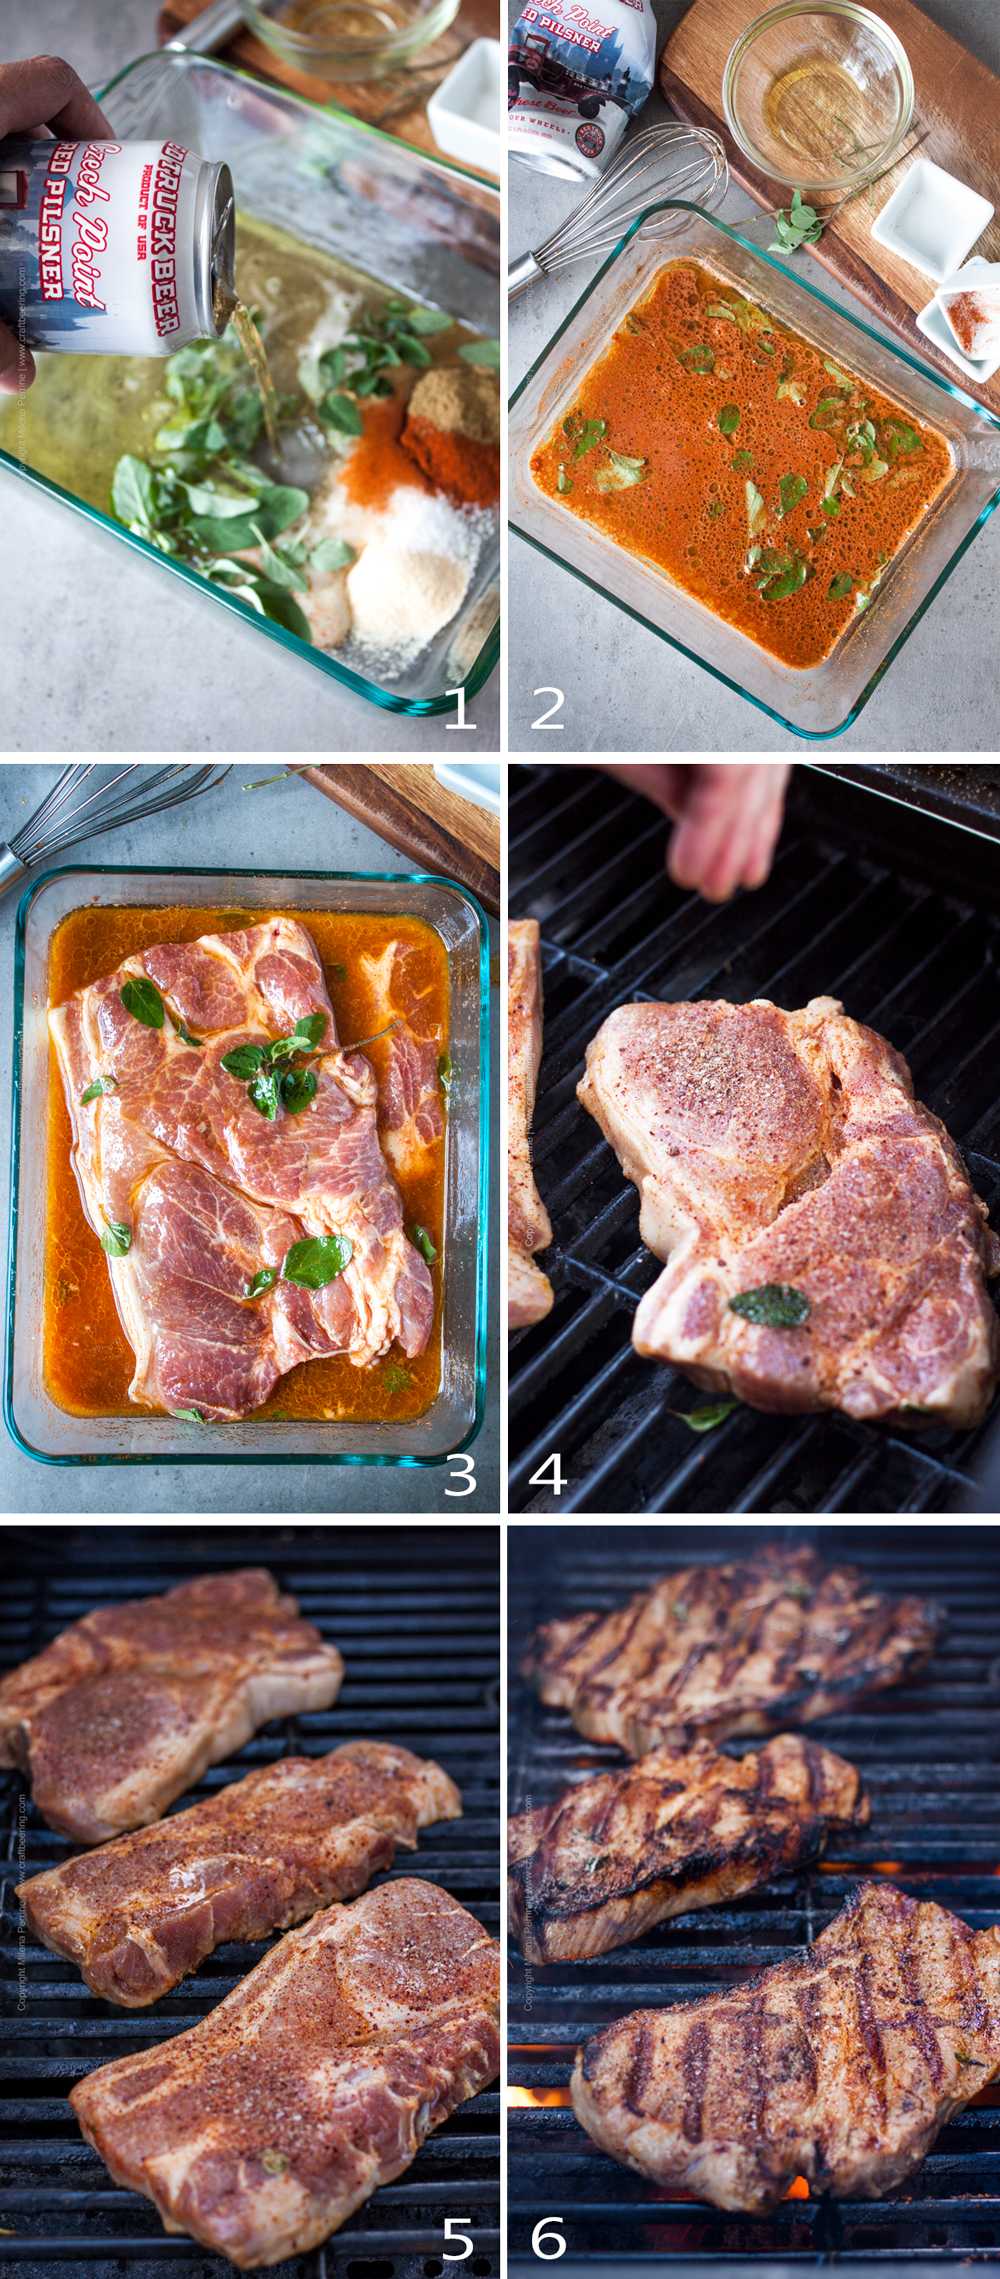 Jak przyrządzić stek z łopatki wieprzowej na grillu - zdjęcia technologiczne.